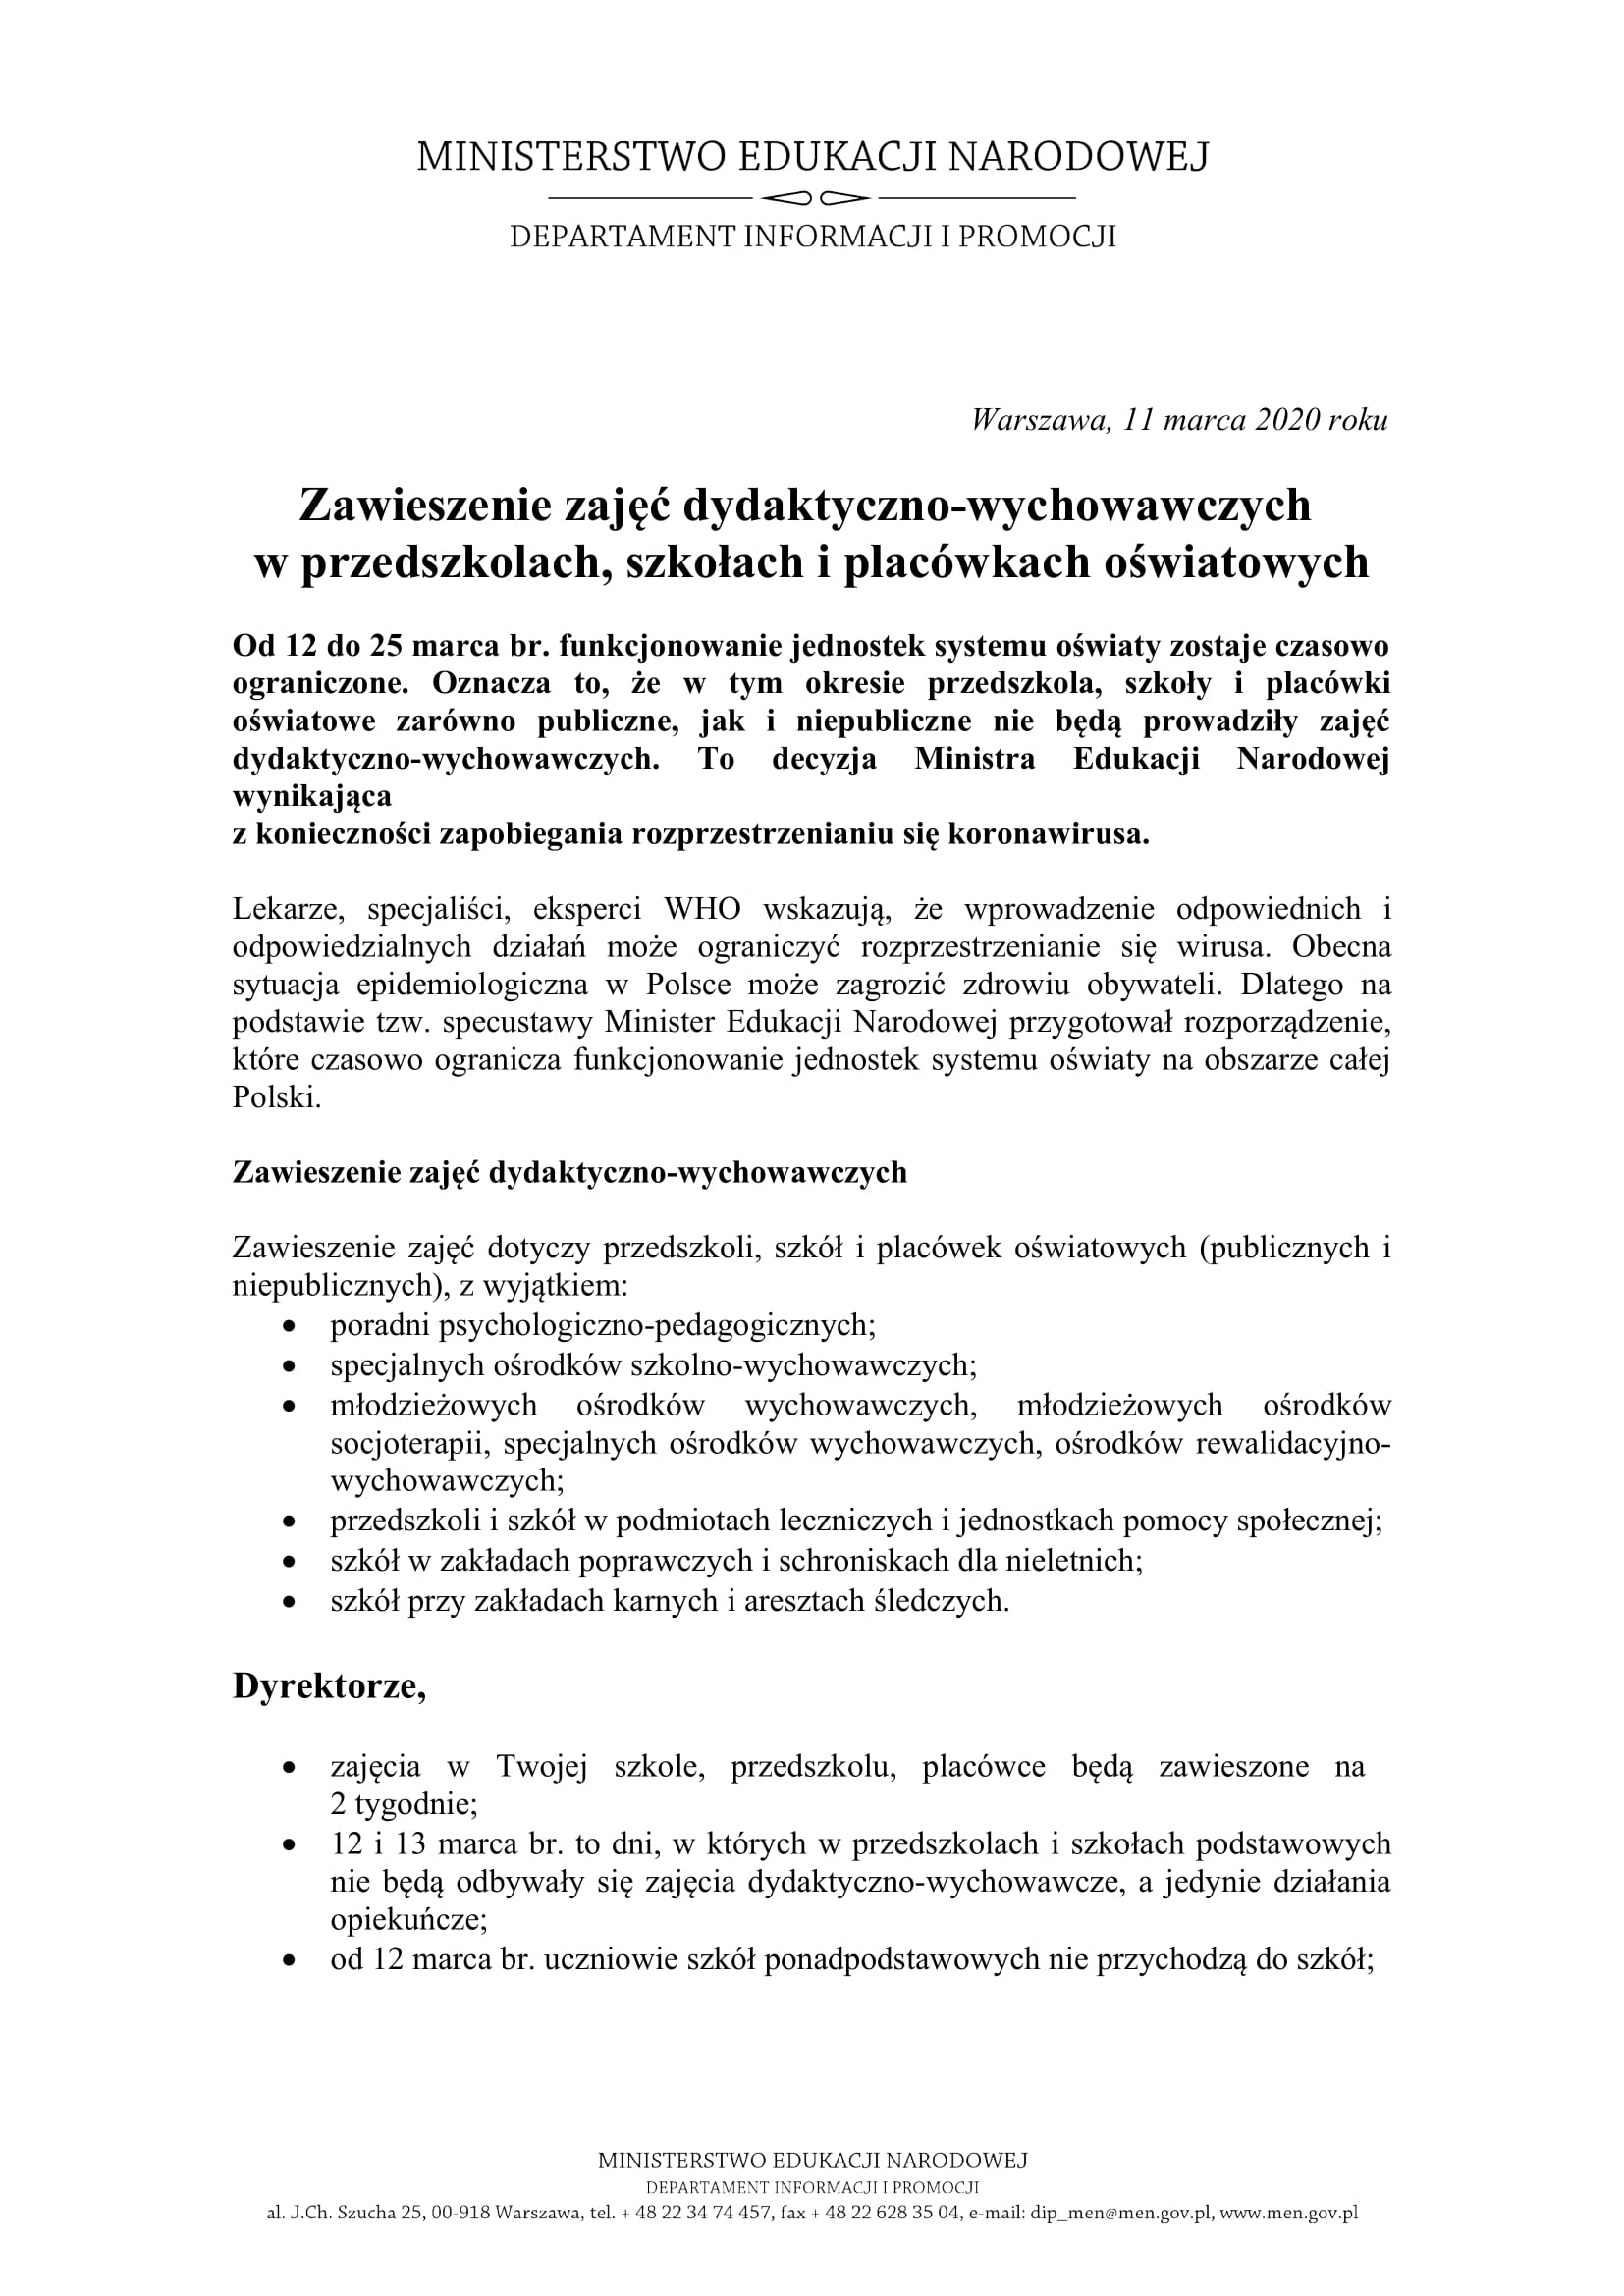 https://m.powiatszczycienski.pl/2020/03/orig/2020-03-11-zawieszenie-zajec-w-przedszkolach-szkolach-i-placowkach-men-1-28483.jpg